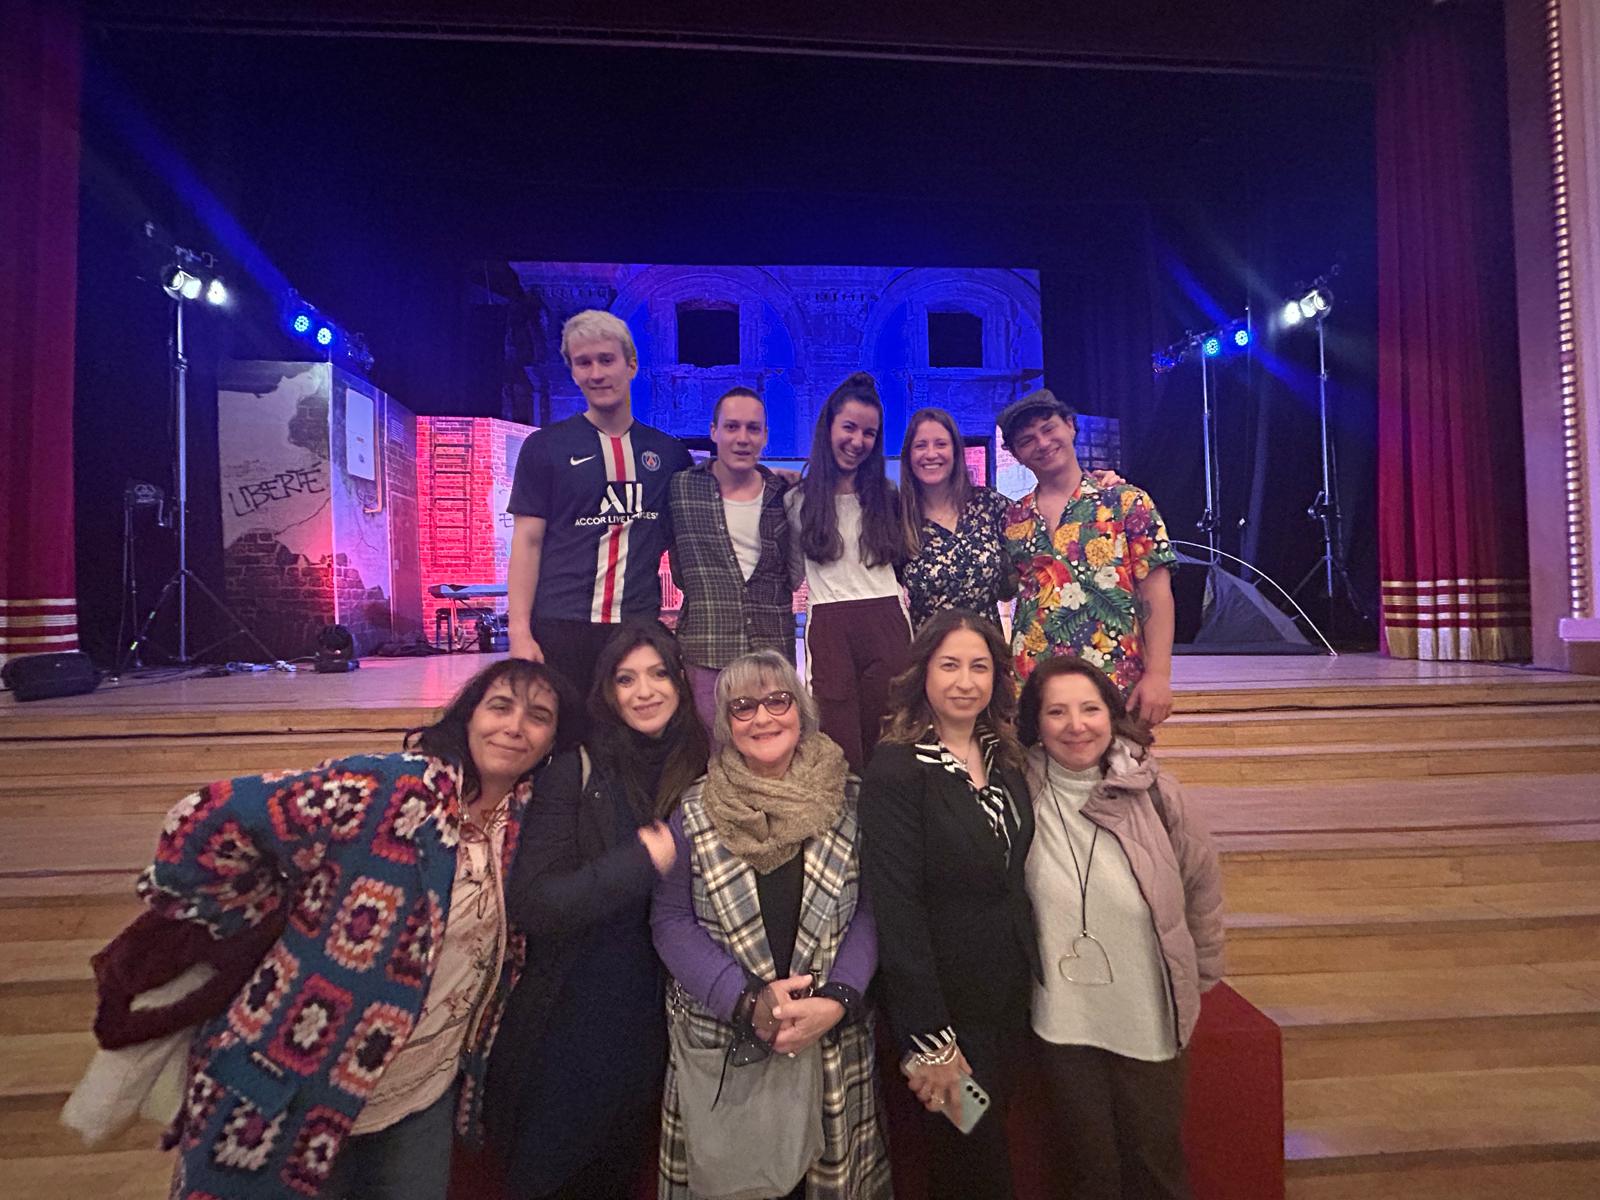 Caltanissetta. Gli alunni dell’IISS “Luigi Russo” al Cine Teatro Moncada per lo spettacolo “Les Miserables 93”